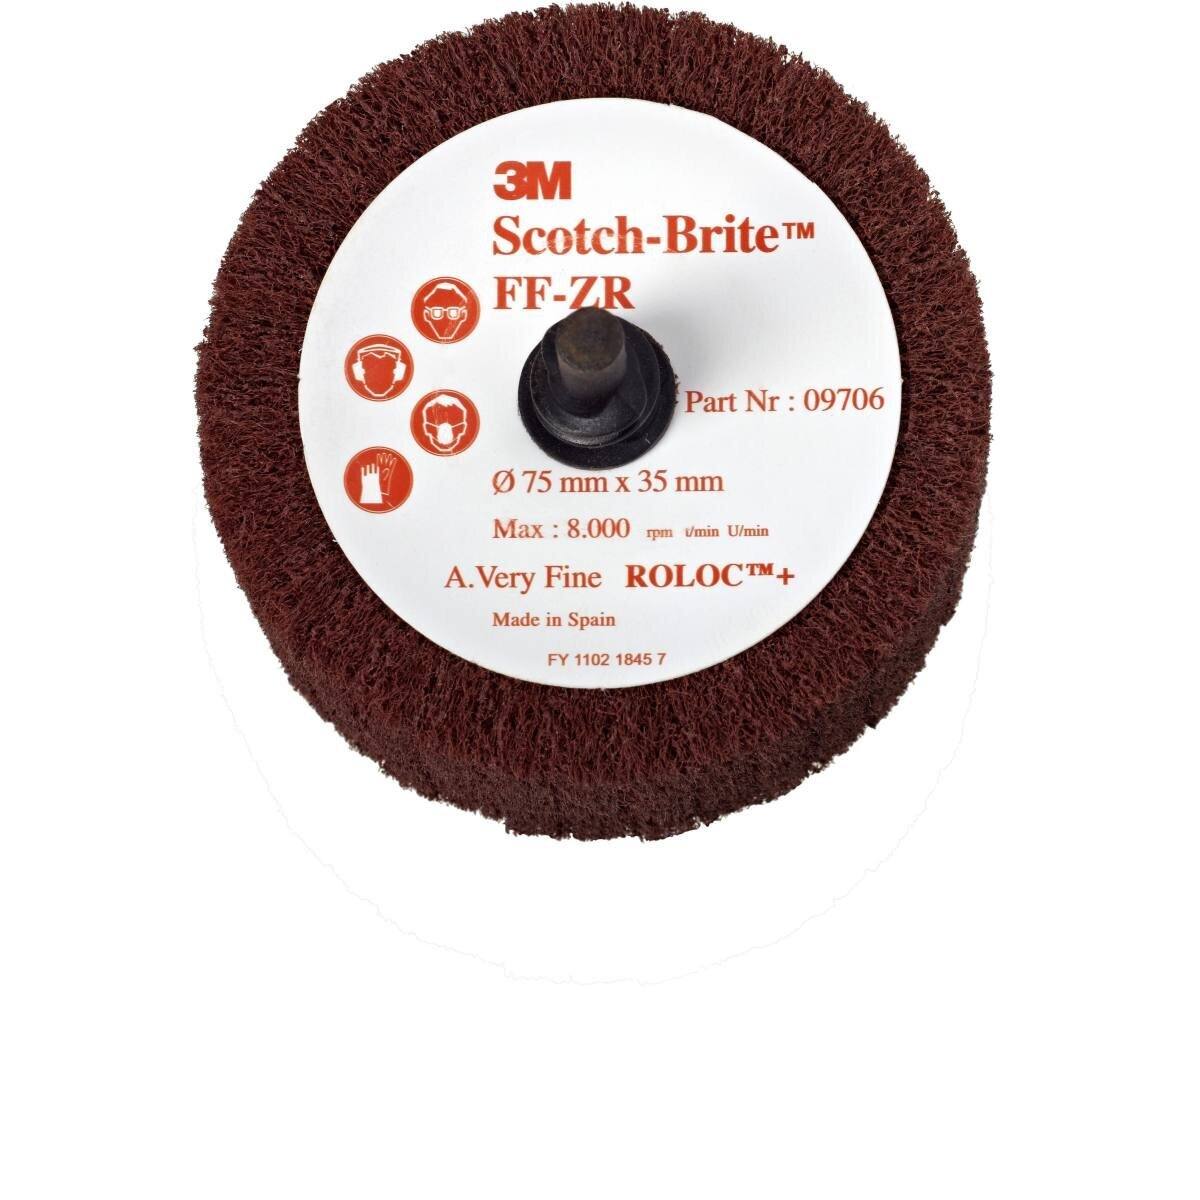 3M Scotch-Brite Roloc spazzola per lamelle FF-ZR, rosso-marrone, 50,8 mm, 25 mm, A, molto fine #09704